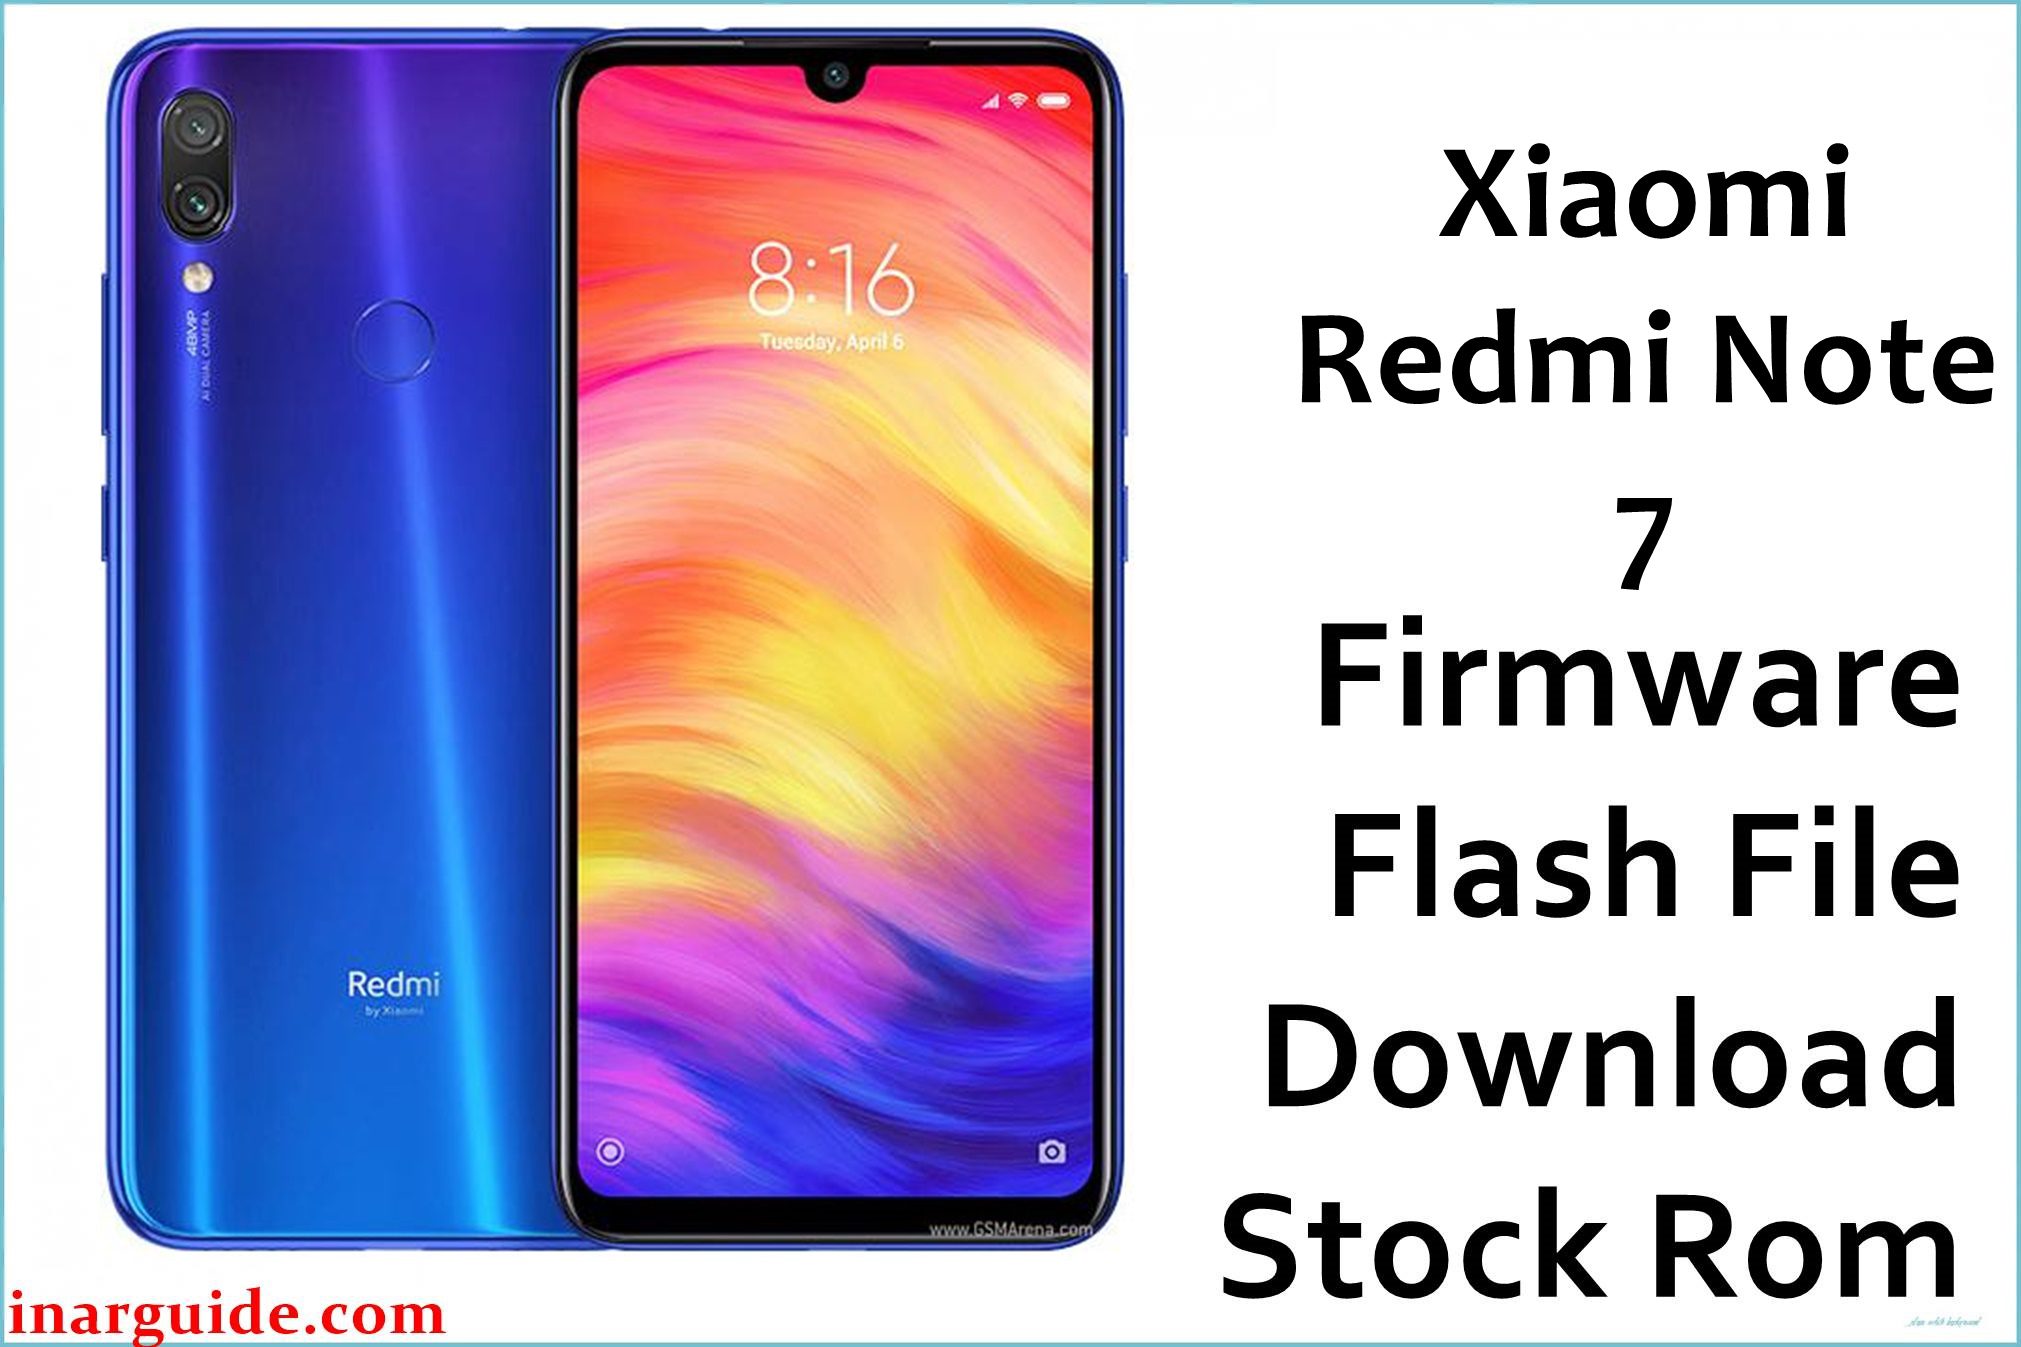 Xiaomi Redmi Note 7 Firmware Flash File Download Stock Rom Inar Guide 9433